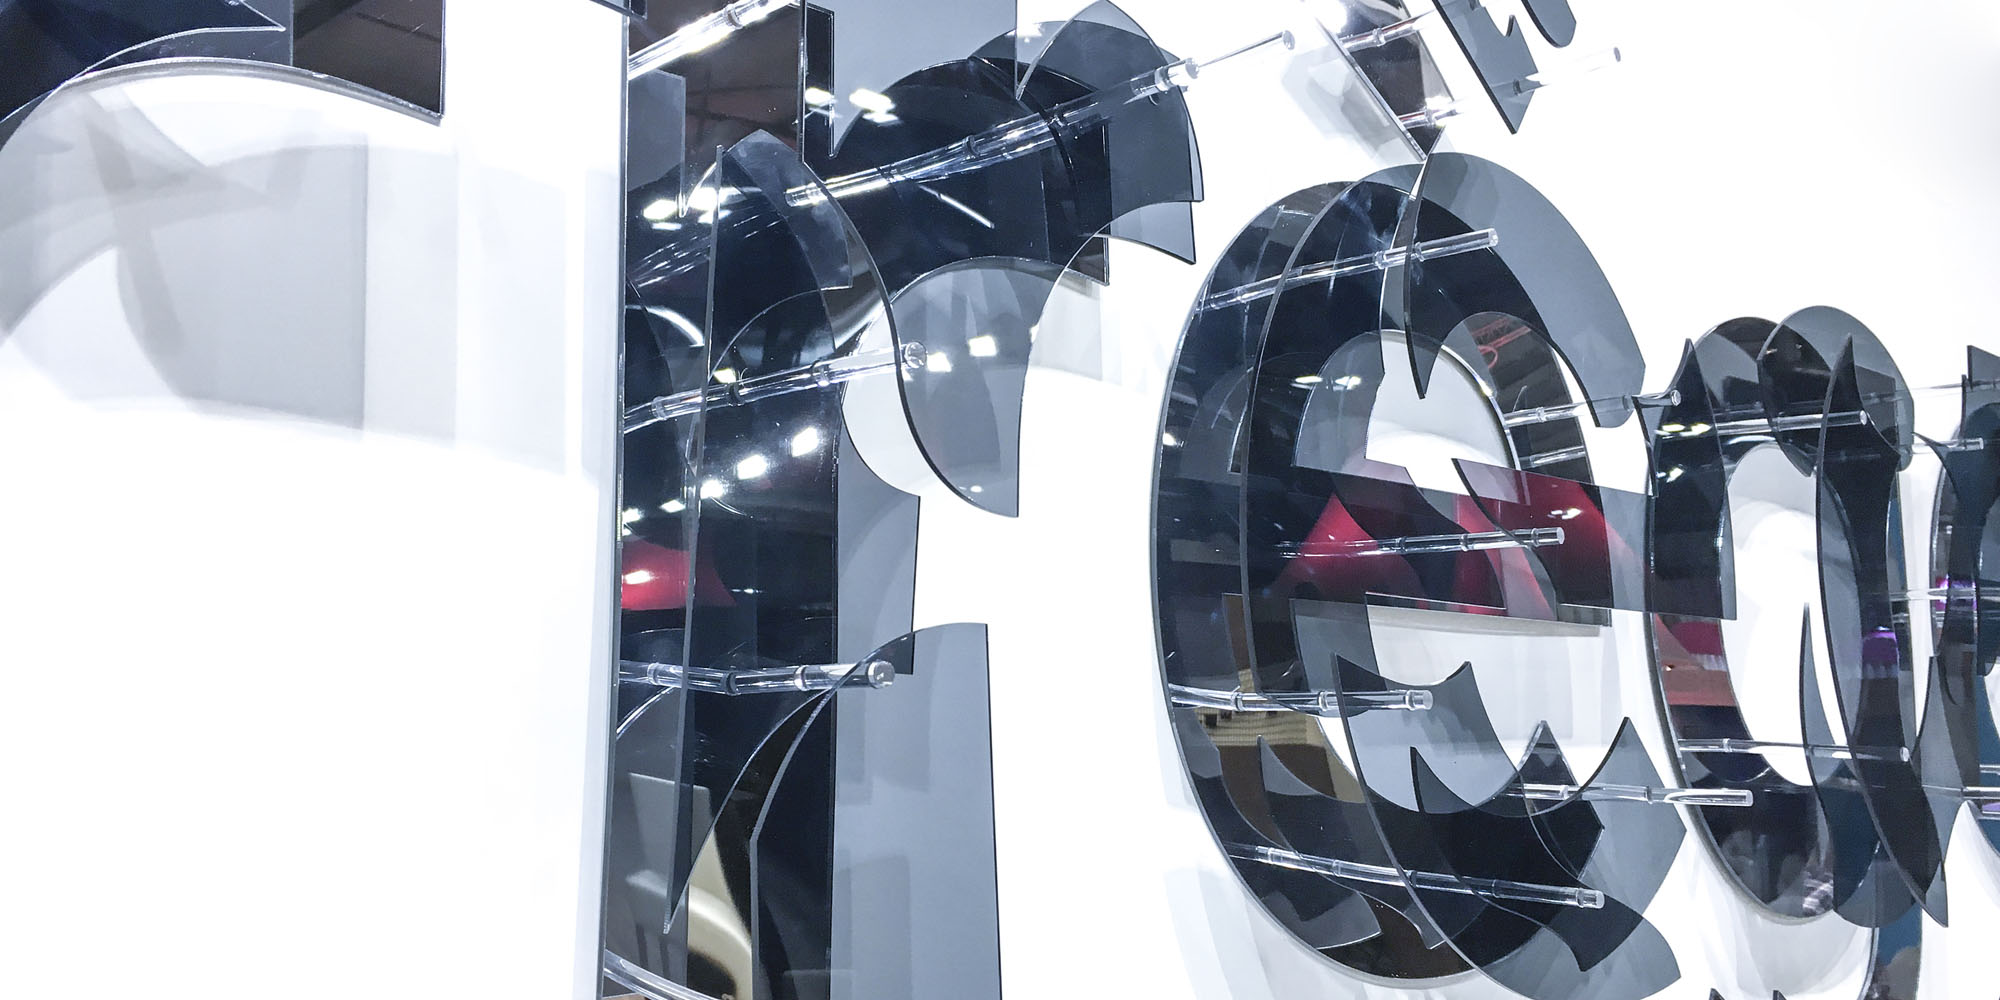 décomposition Courrèges en pièces de plexiglas noir translucide et miroir inspirées du motif de la collection lunettes 2017 de la marque: réalisation d’une enseigne de 4 mètres de long destinée à orner le stand de la marque sur le Mido Eyewear Show à Milan